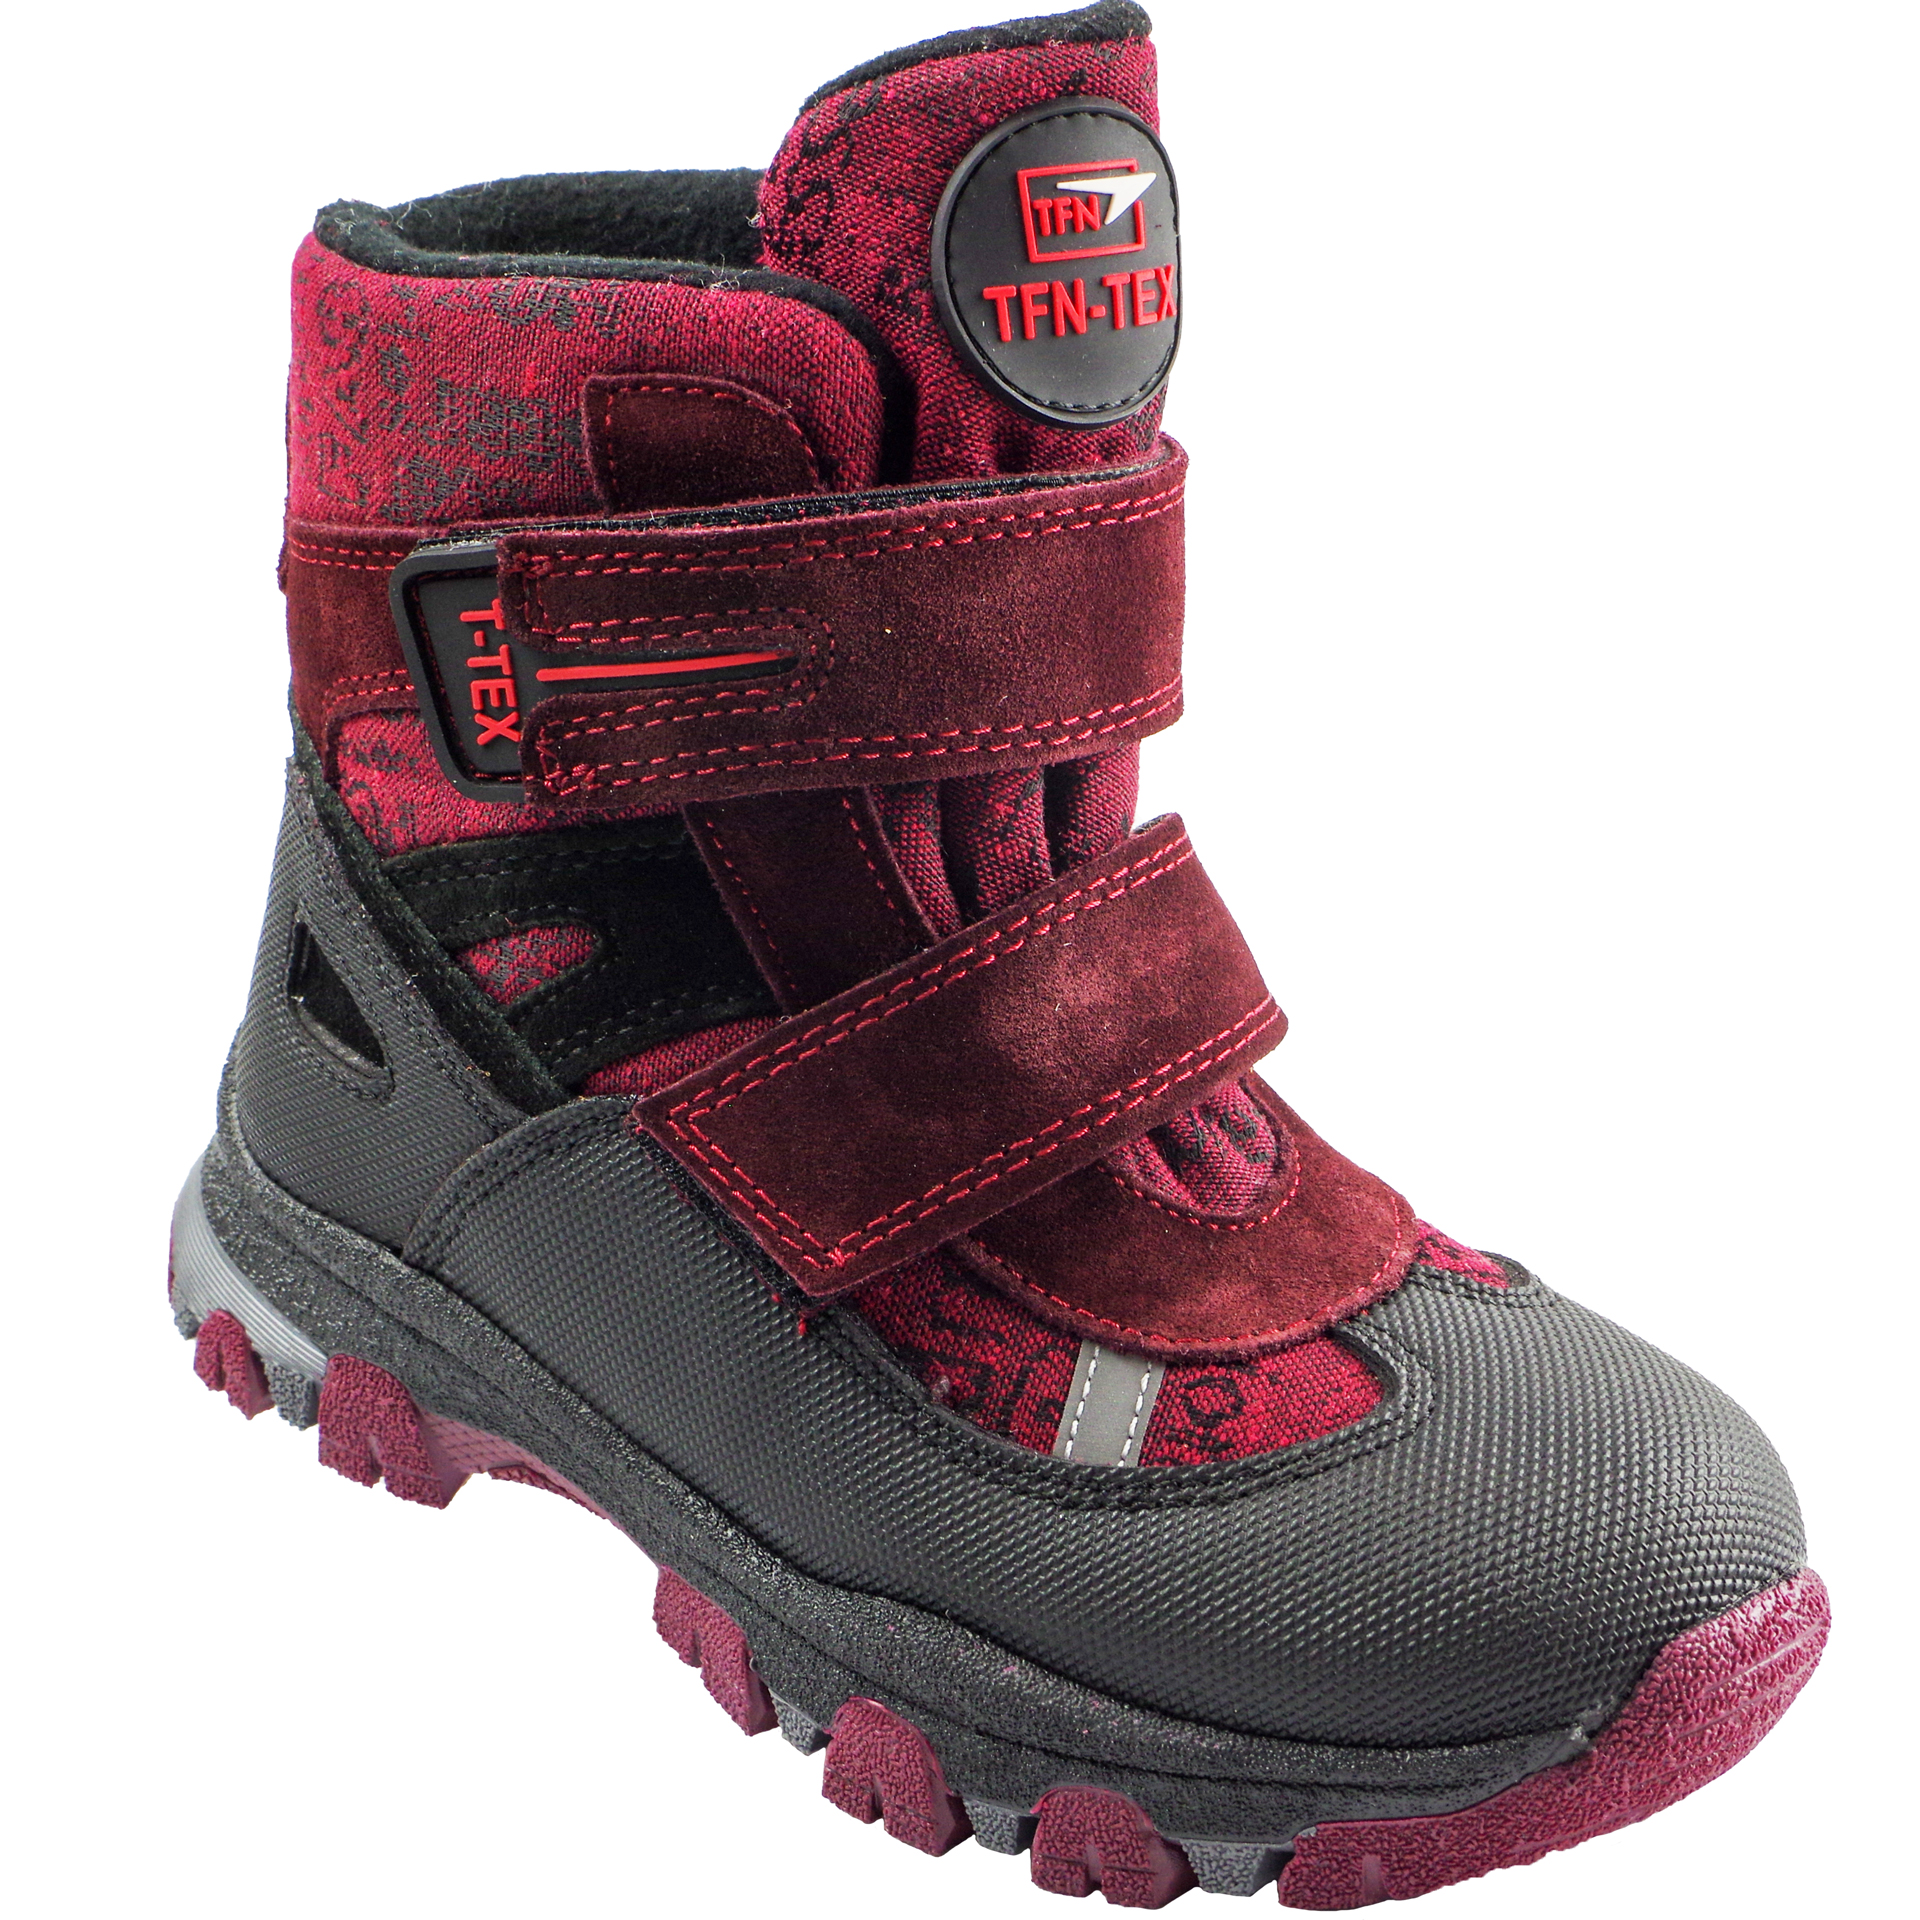 Зимние мембранные ботинки (2153) материал Мембрана, цвет Красный  для девочки 31-36 размеры – Sole Kids, Днепр